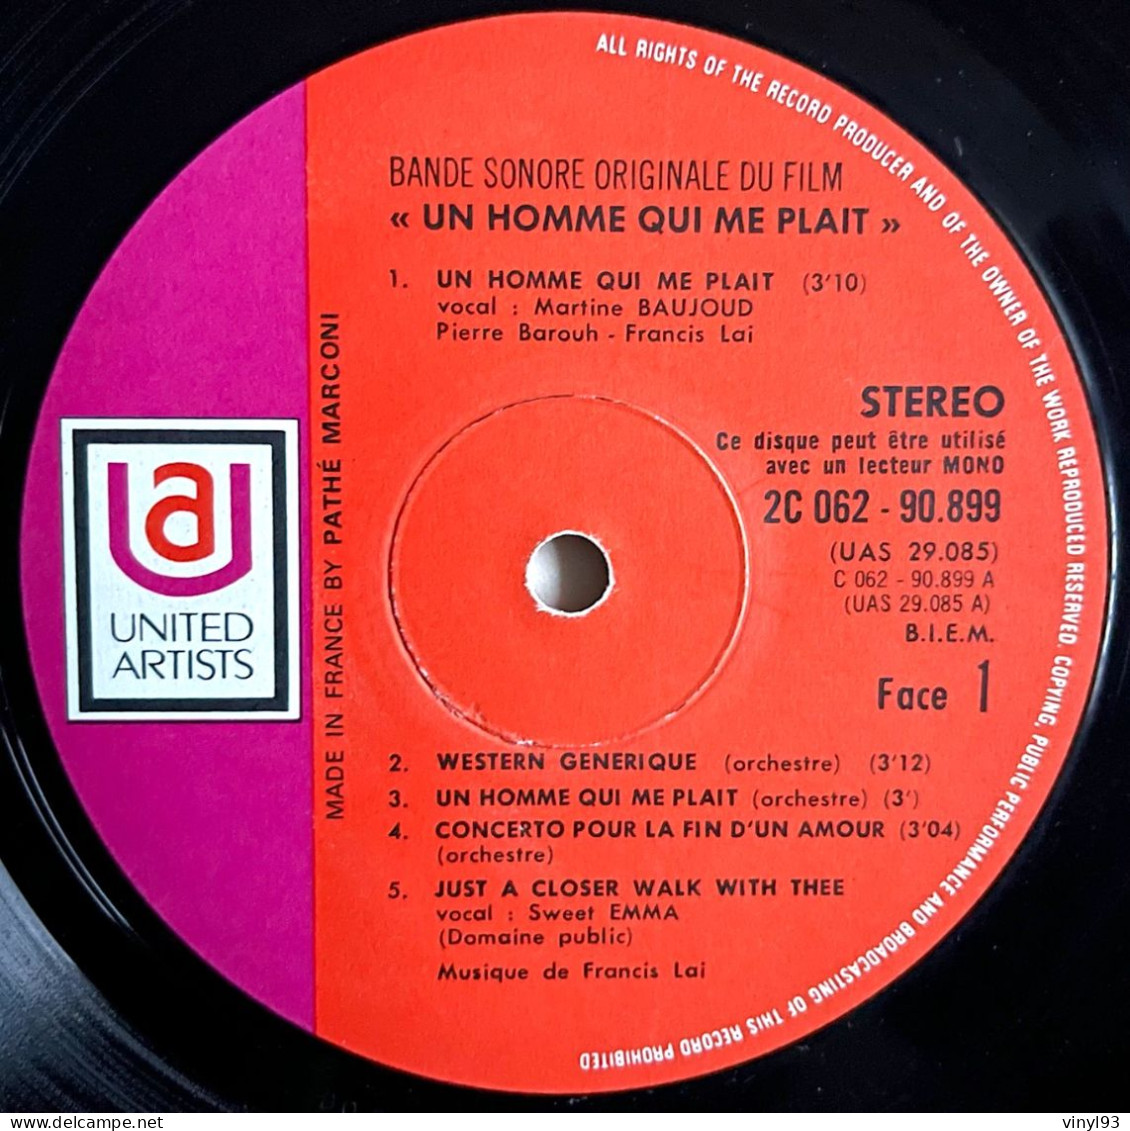 1969 - Bande Originale Du Film De Claude Lelouch "Un Homme Qui Me Plait" Avec Belmondo - LP 33T - United Artists - Musique De Films